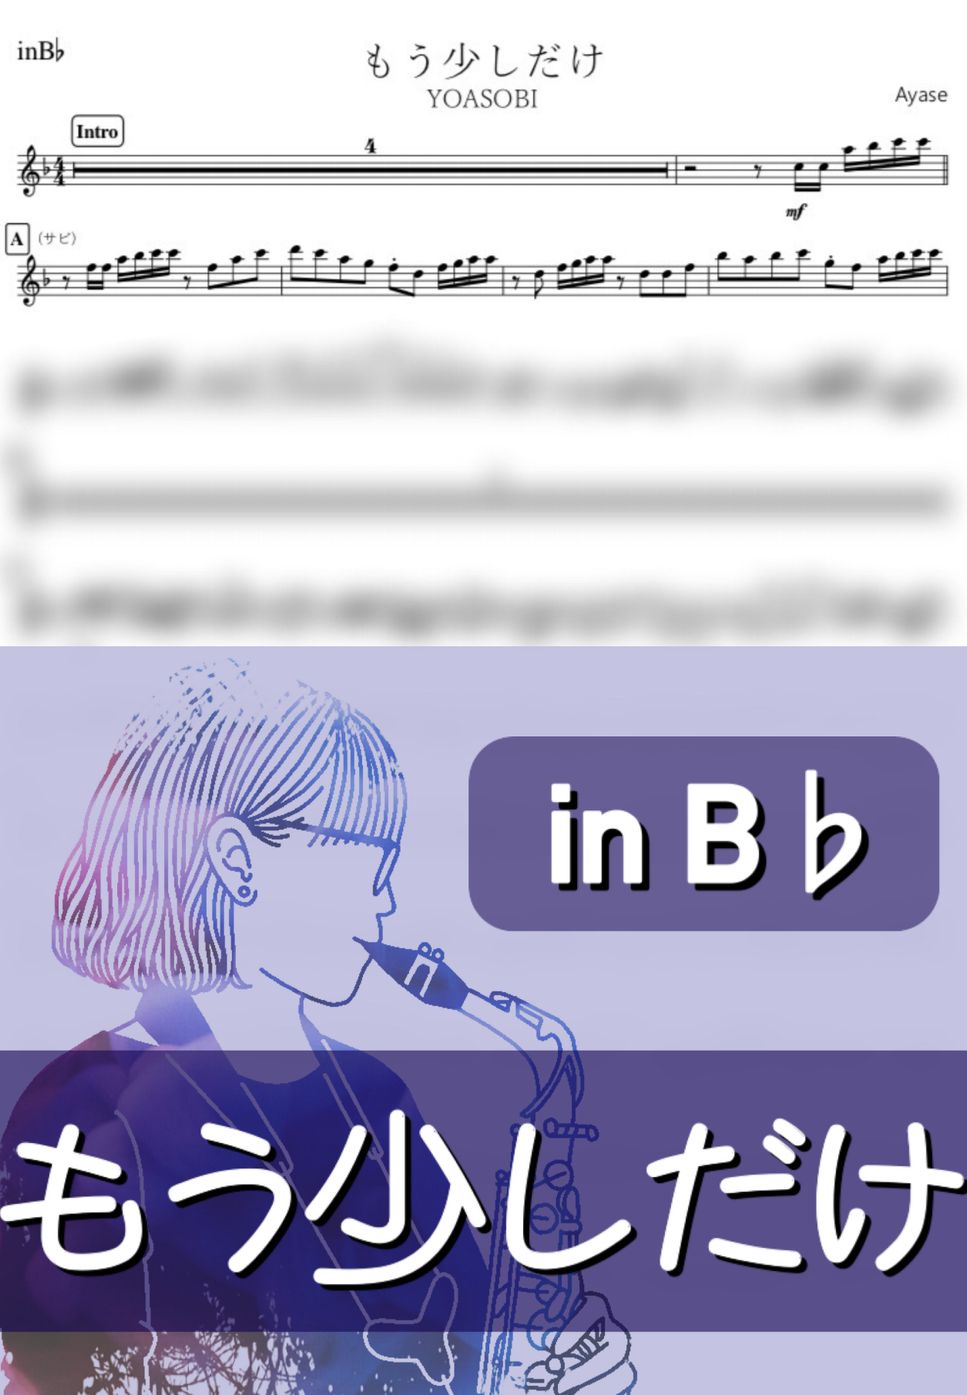 YOASOBI - もう少しだけ (B♭) by kanamusic